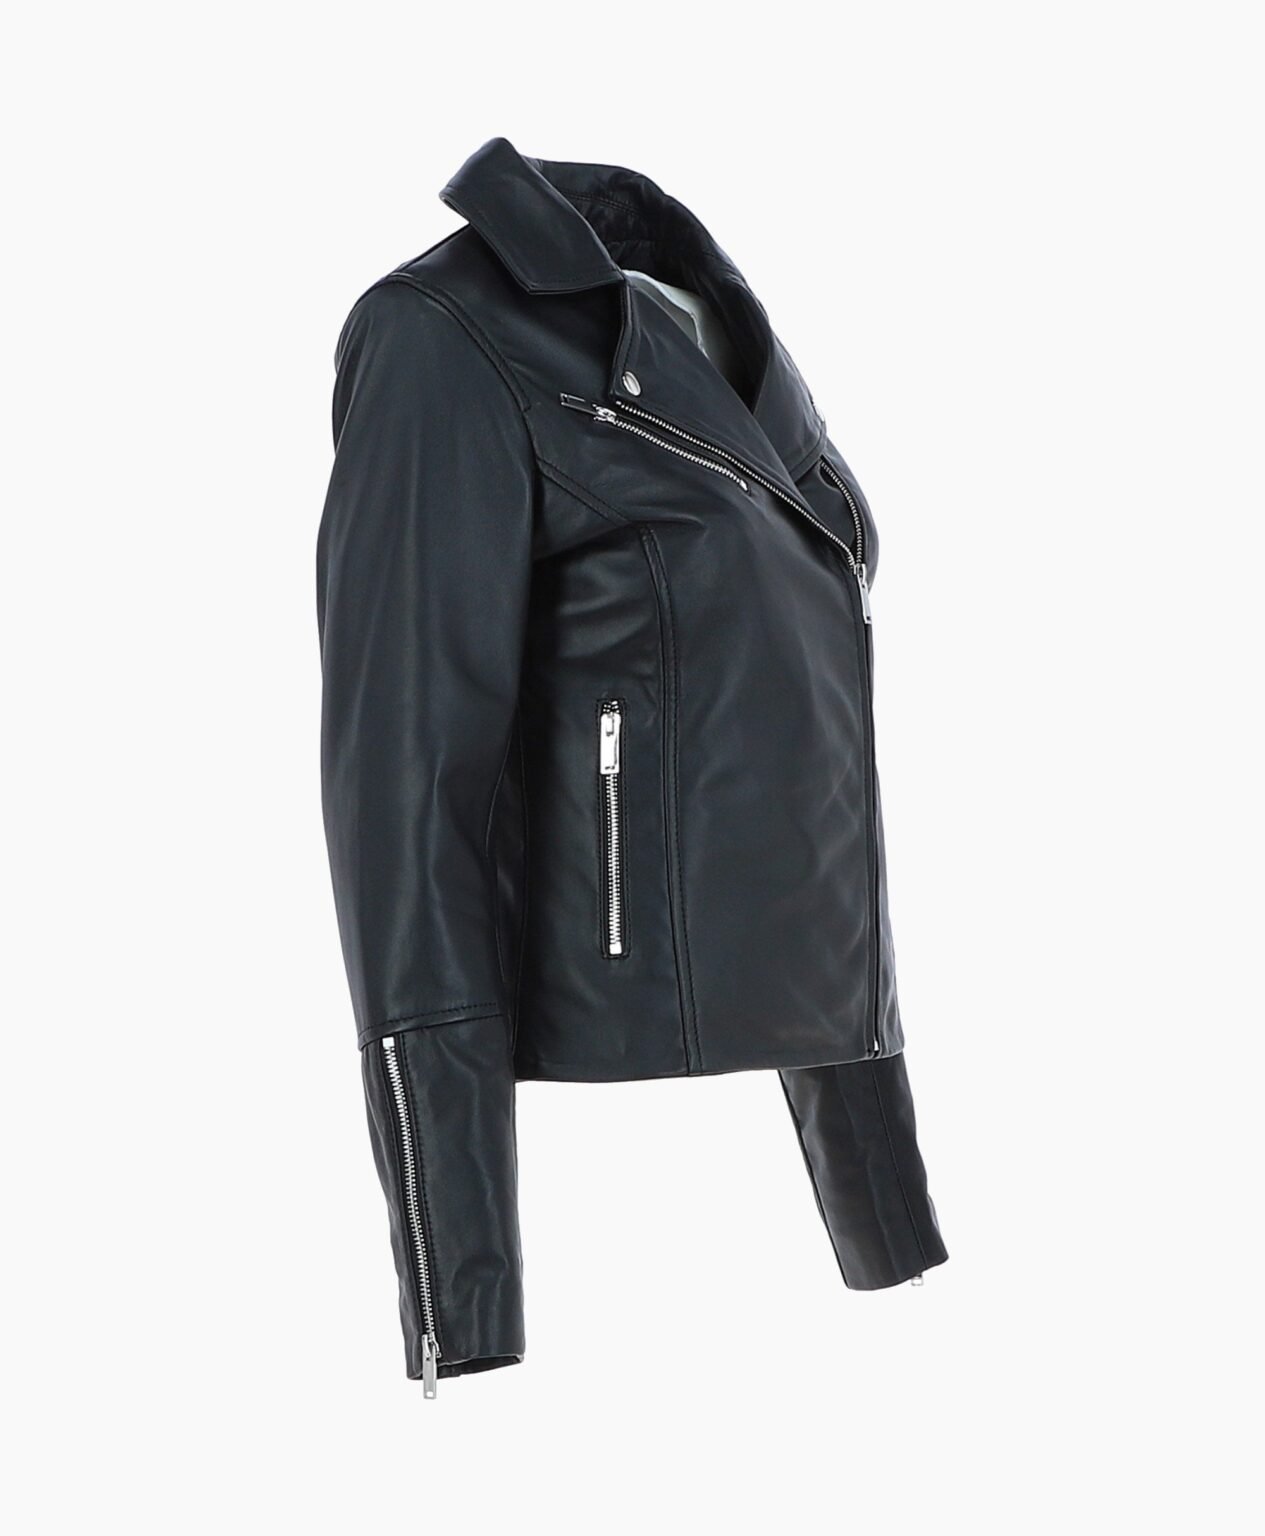 vogue-jacket-leather-biker-jacket-black-greeley-image203